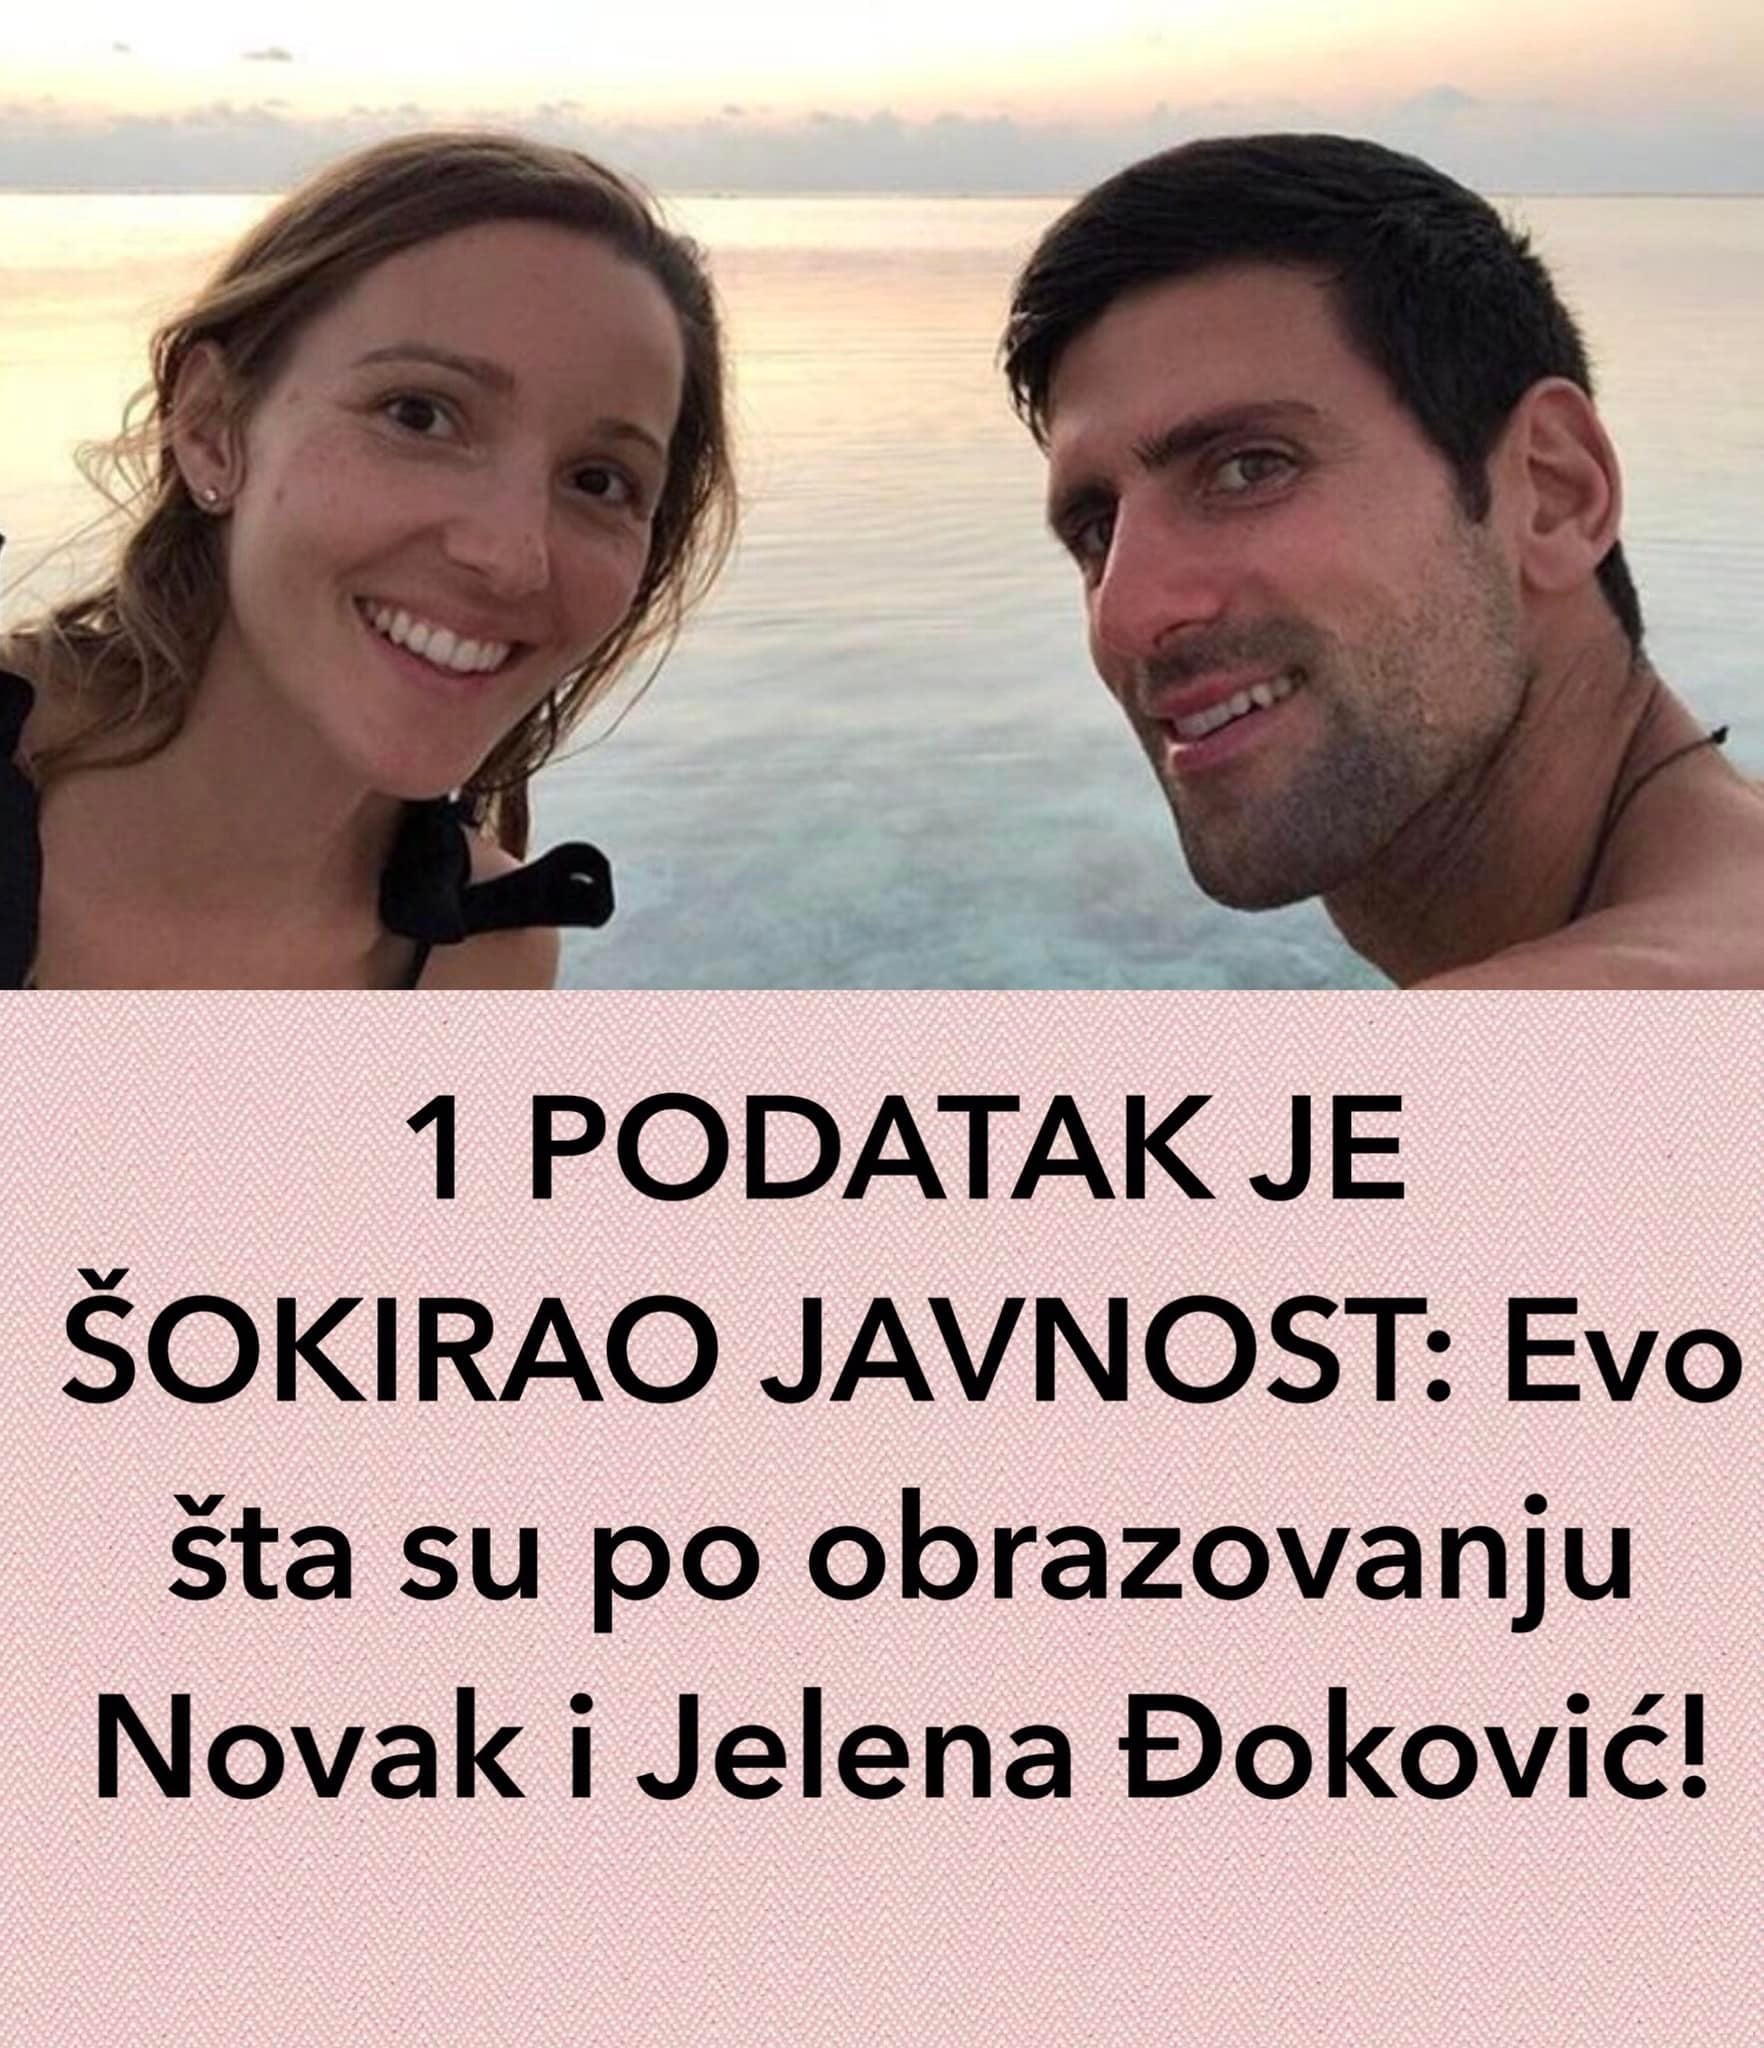 1 PODATAK JE ŠOKIRAO JAVNOST: Evo šta su po obrazovanju Novak i Jelena Đoković! (FOTO)